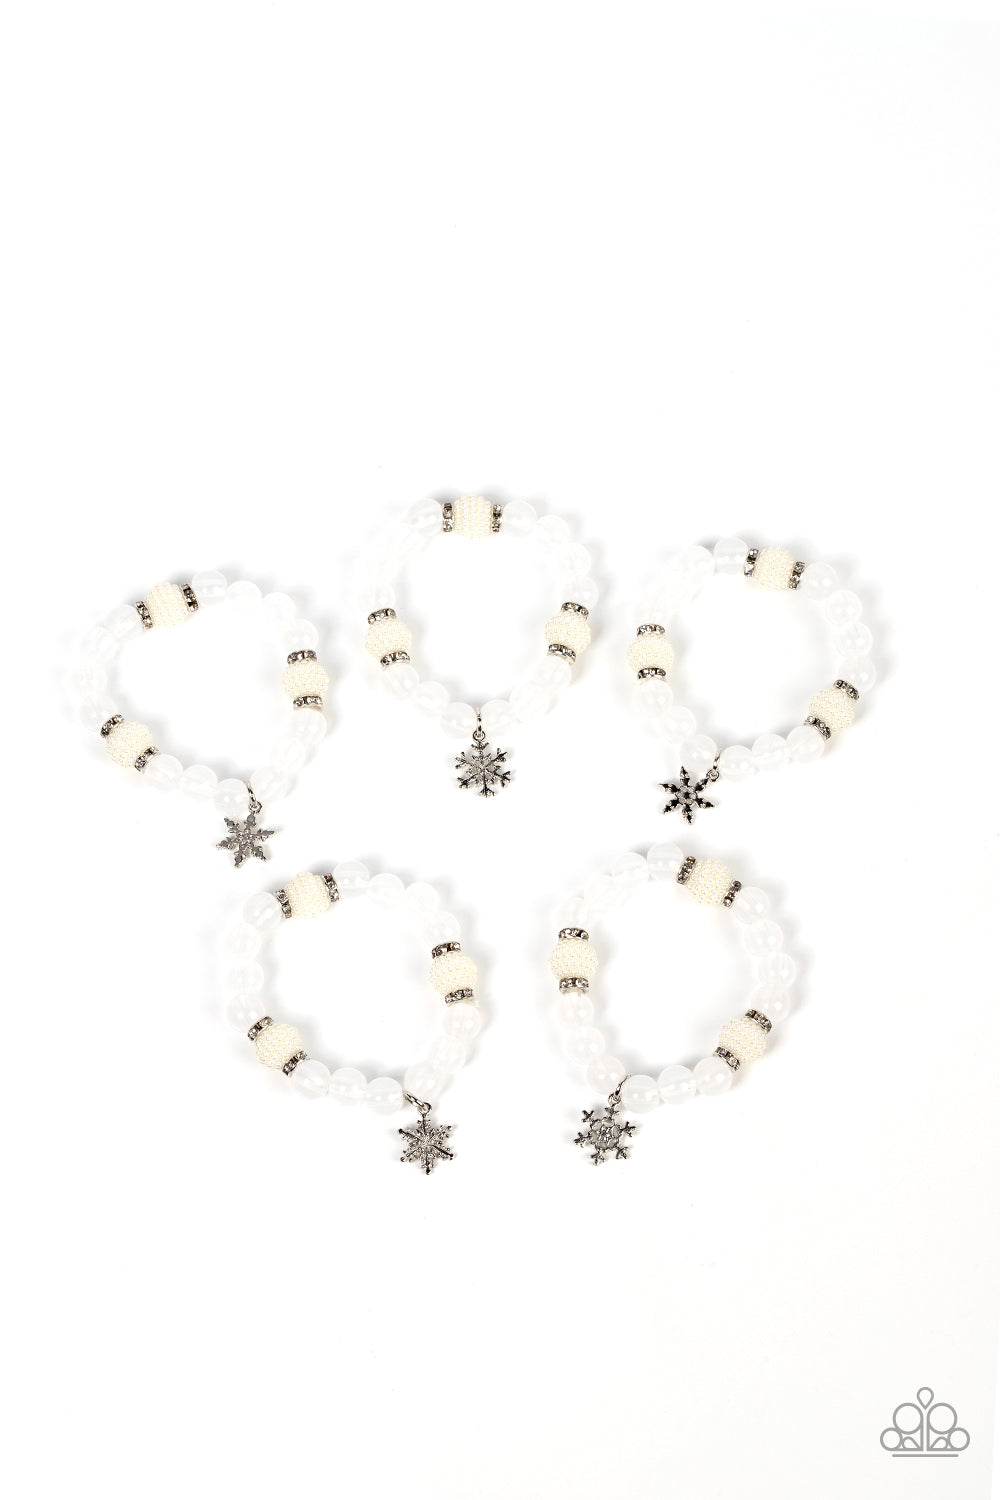 Starlet Shimmer Winter White Snowflake Bracelet Kit♥ Starlet Shimmer Bracelets ♥